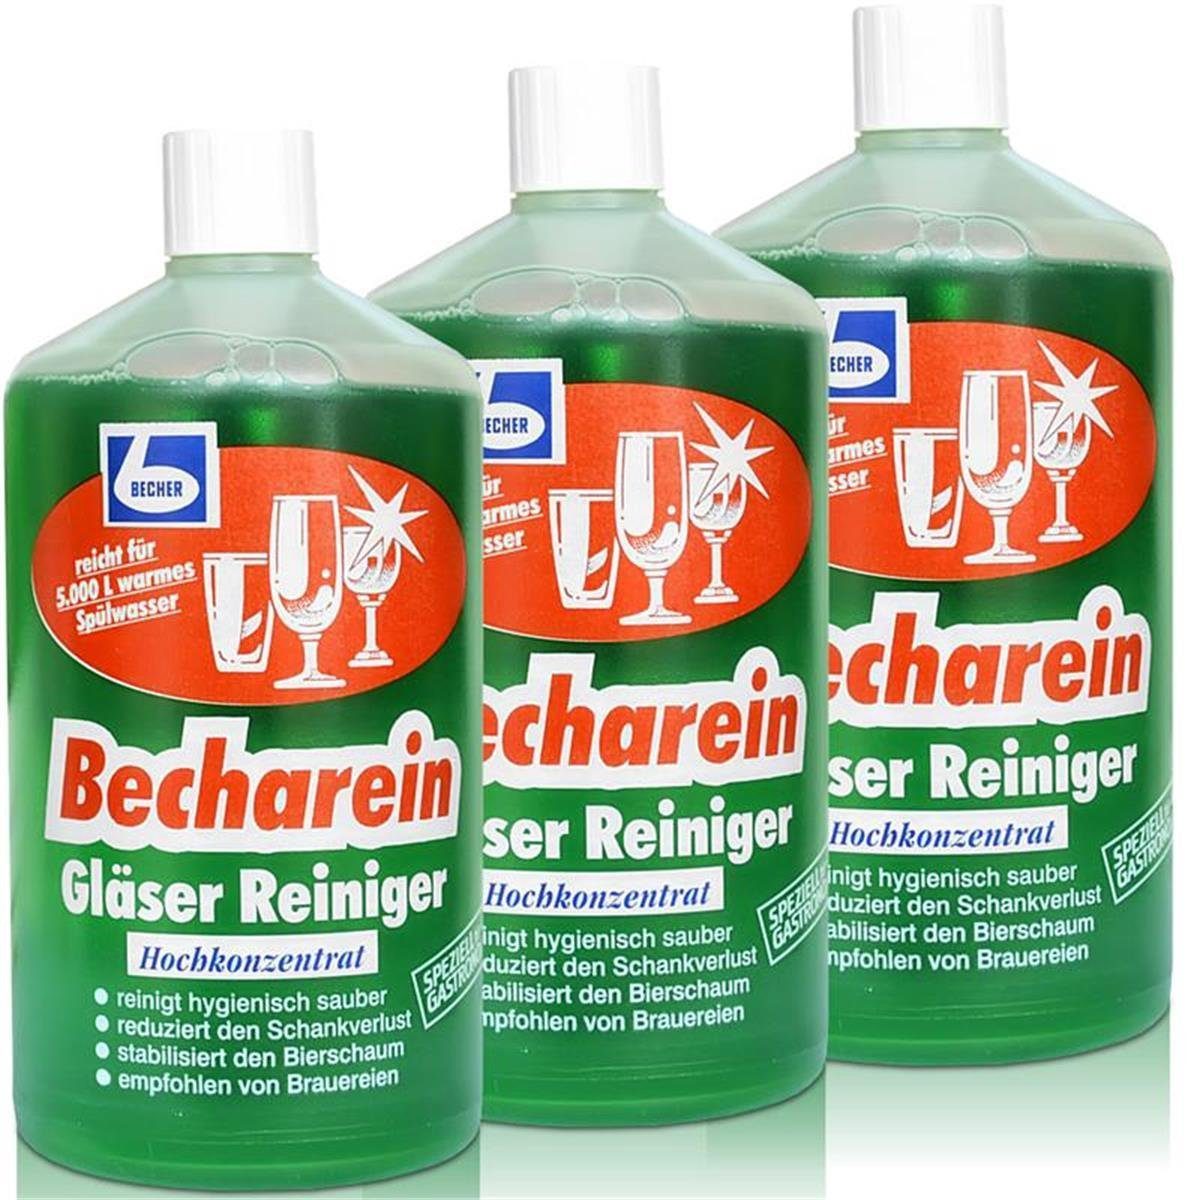 Dr. Becher 3x Dr. Becher Becharein Gläser Reiniger Hochkonzentrat / 1 Liter Glasreiniger | Glasreiniger